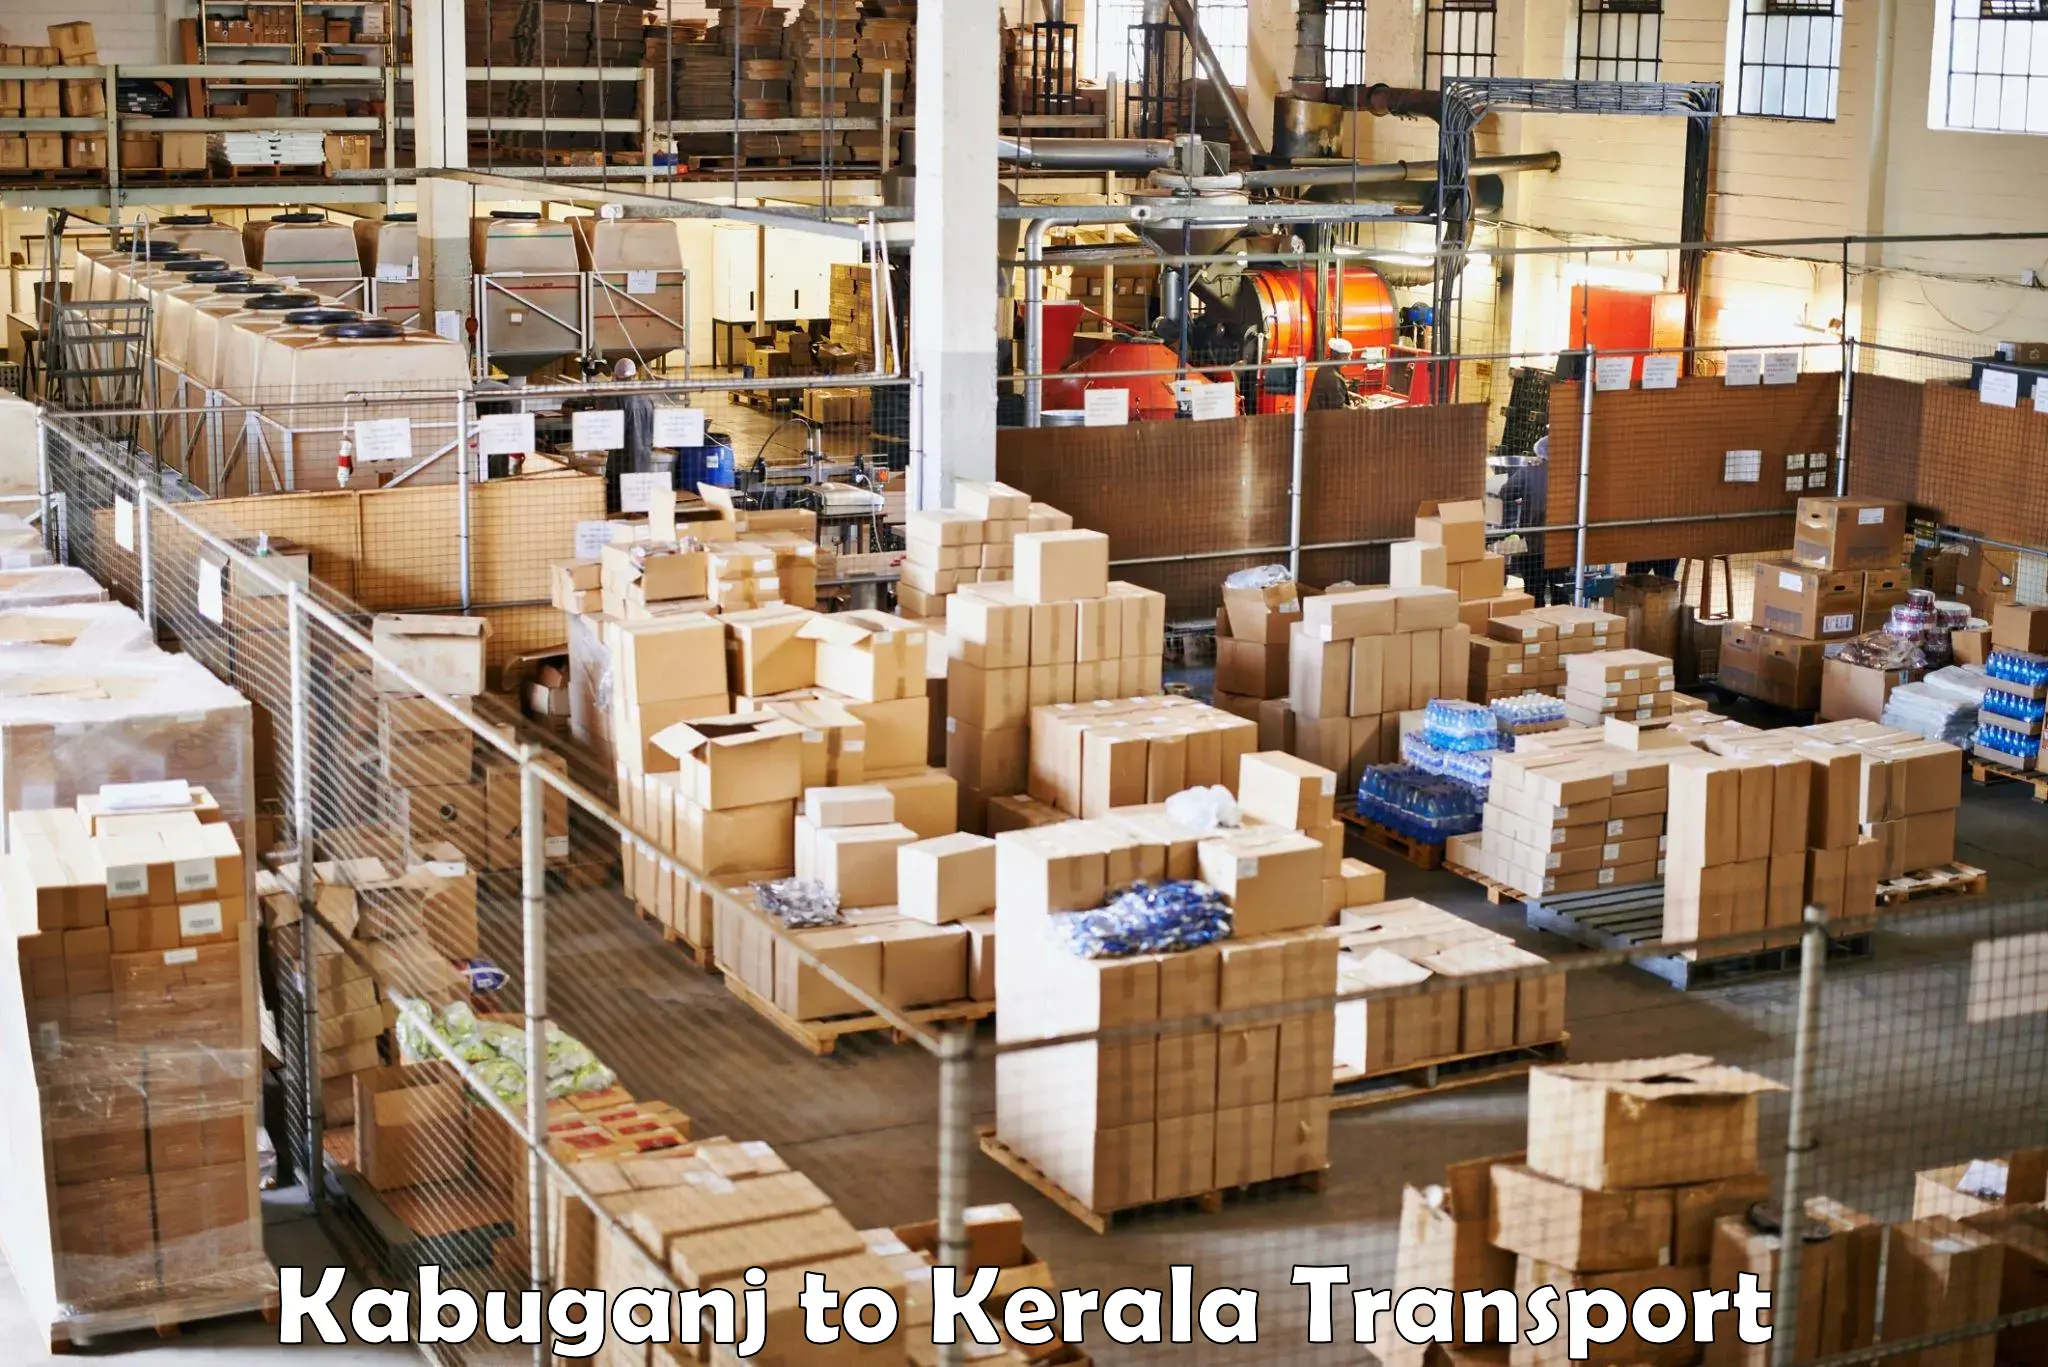 Shipping partner Kabuganj to Cochin Port Kochi